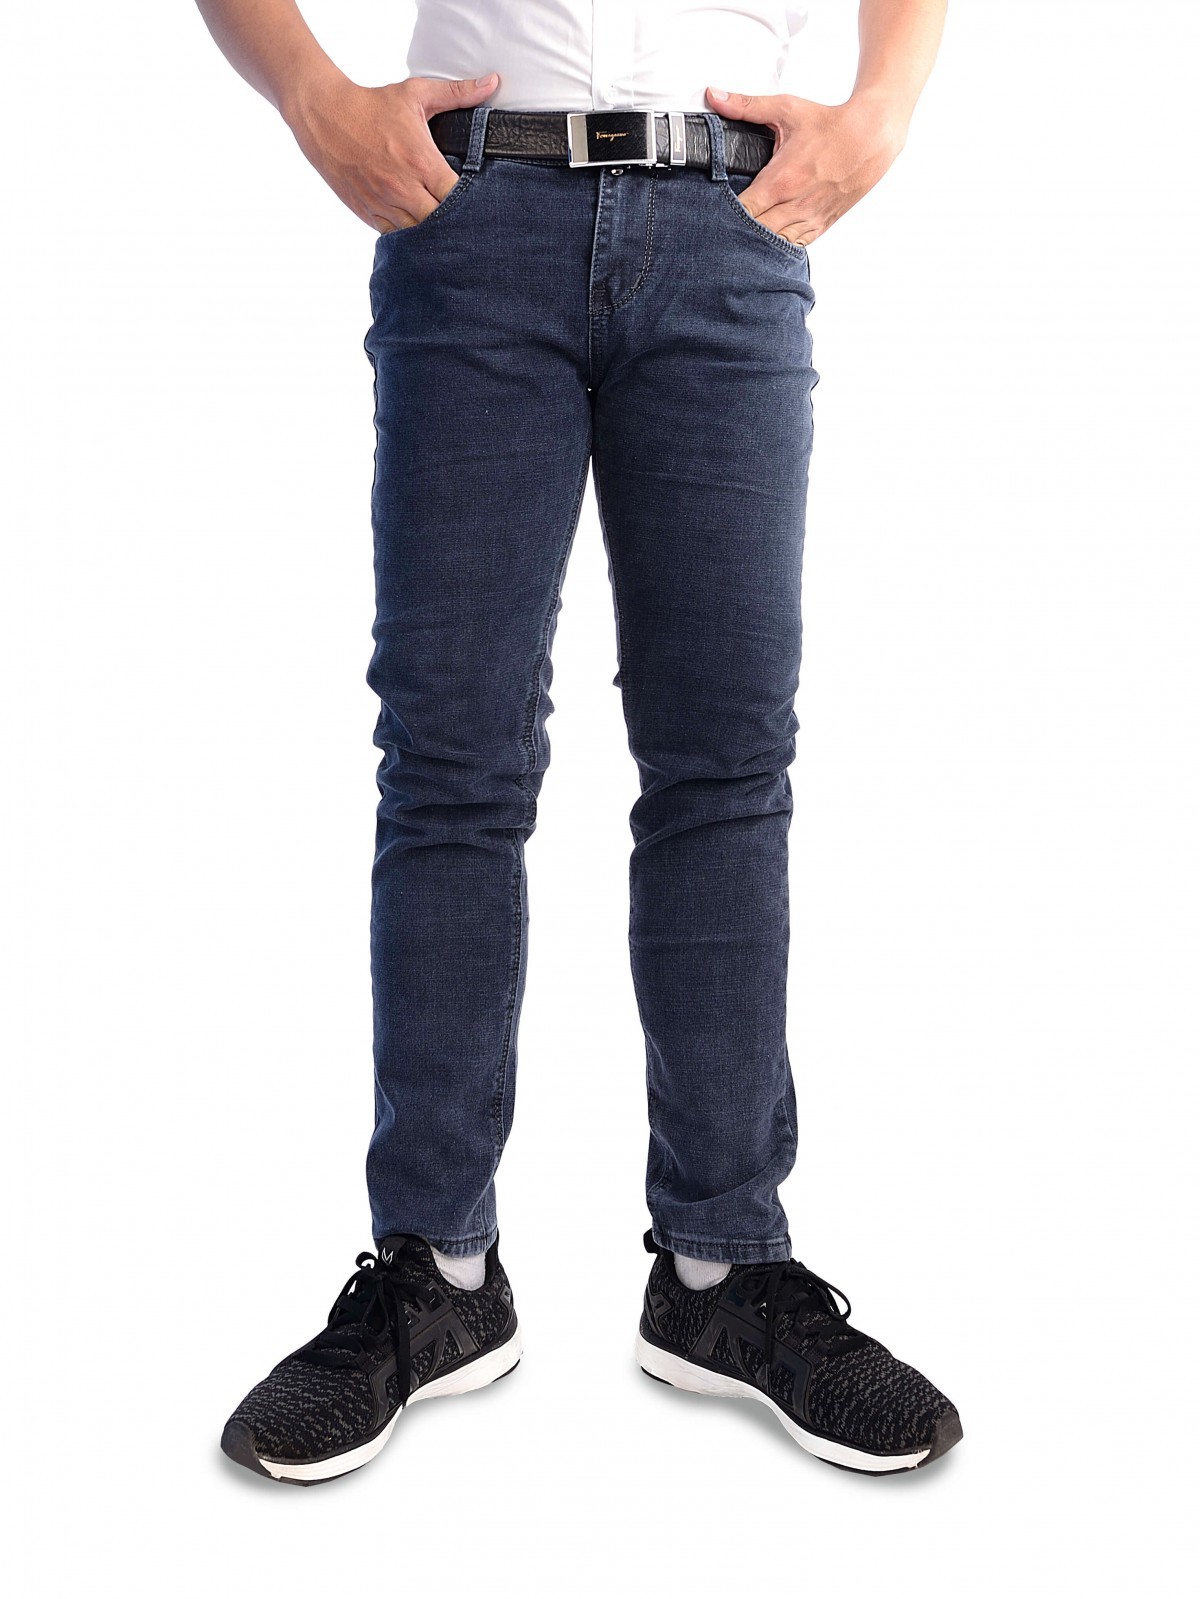 Quần jean nam cổ điển dáng đứng 501-505S | Jeans Style